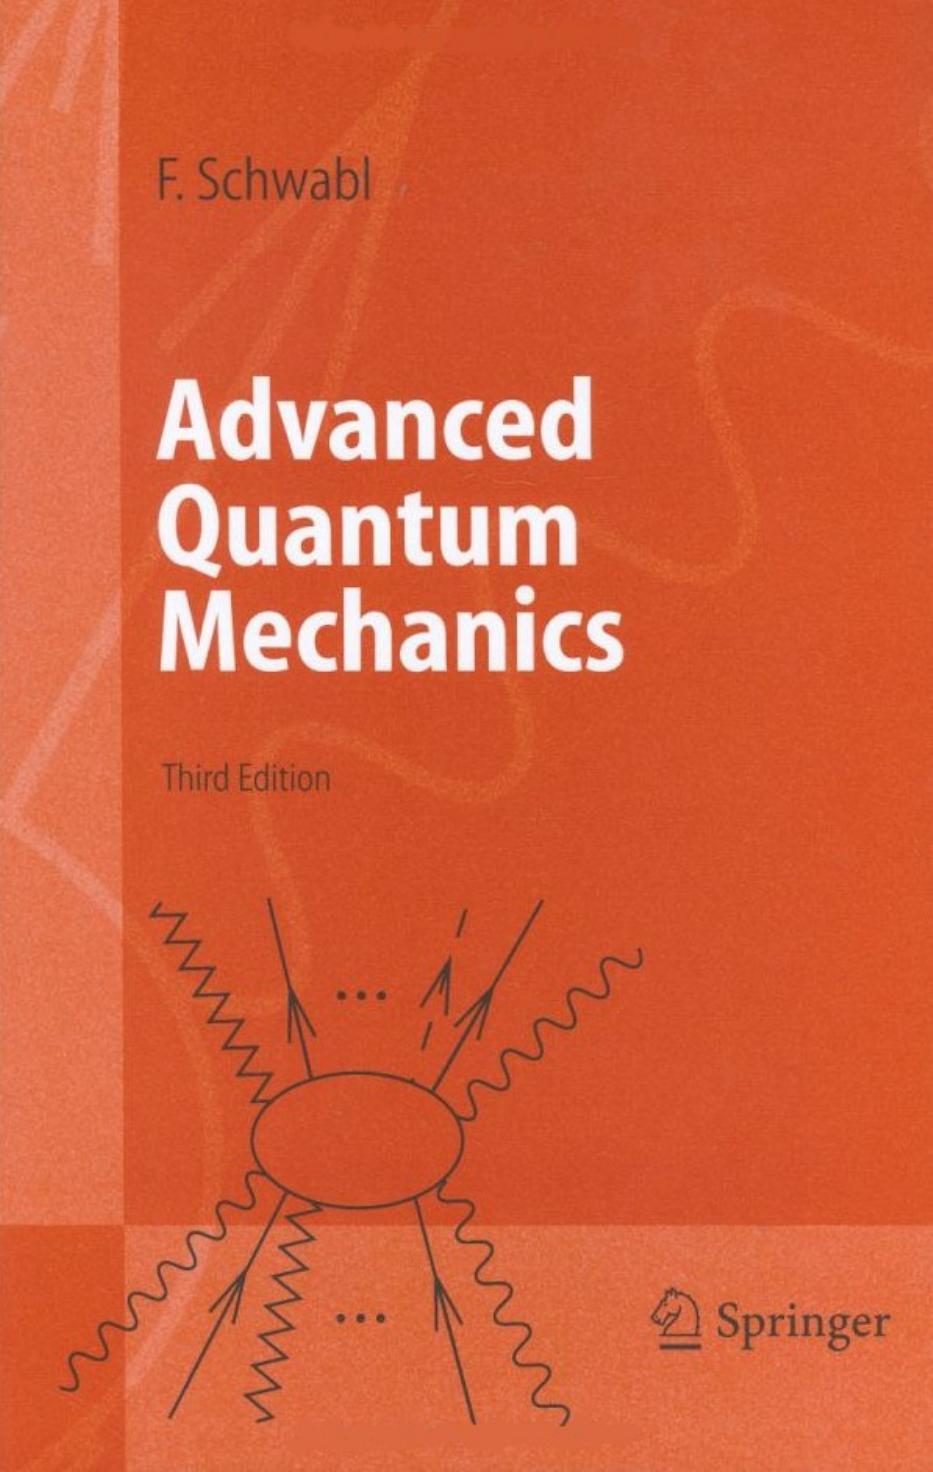 Advanced Quantum Mechanics   ( PDFDrive.com ) 2000